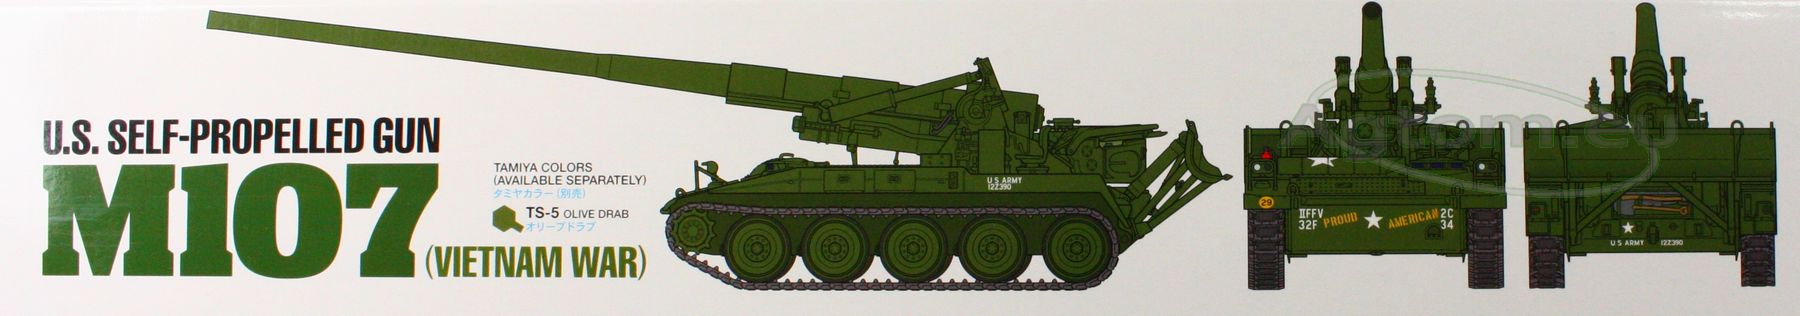 Tamiya 1/35 U.s. Self-propelled Gun M107 Vietnam War Model Kit